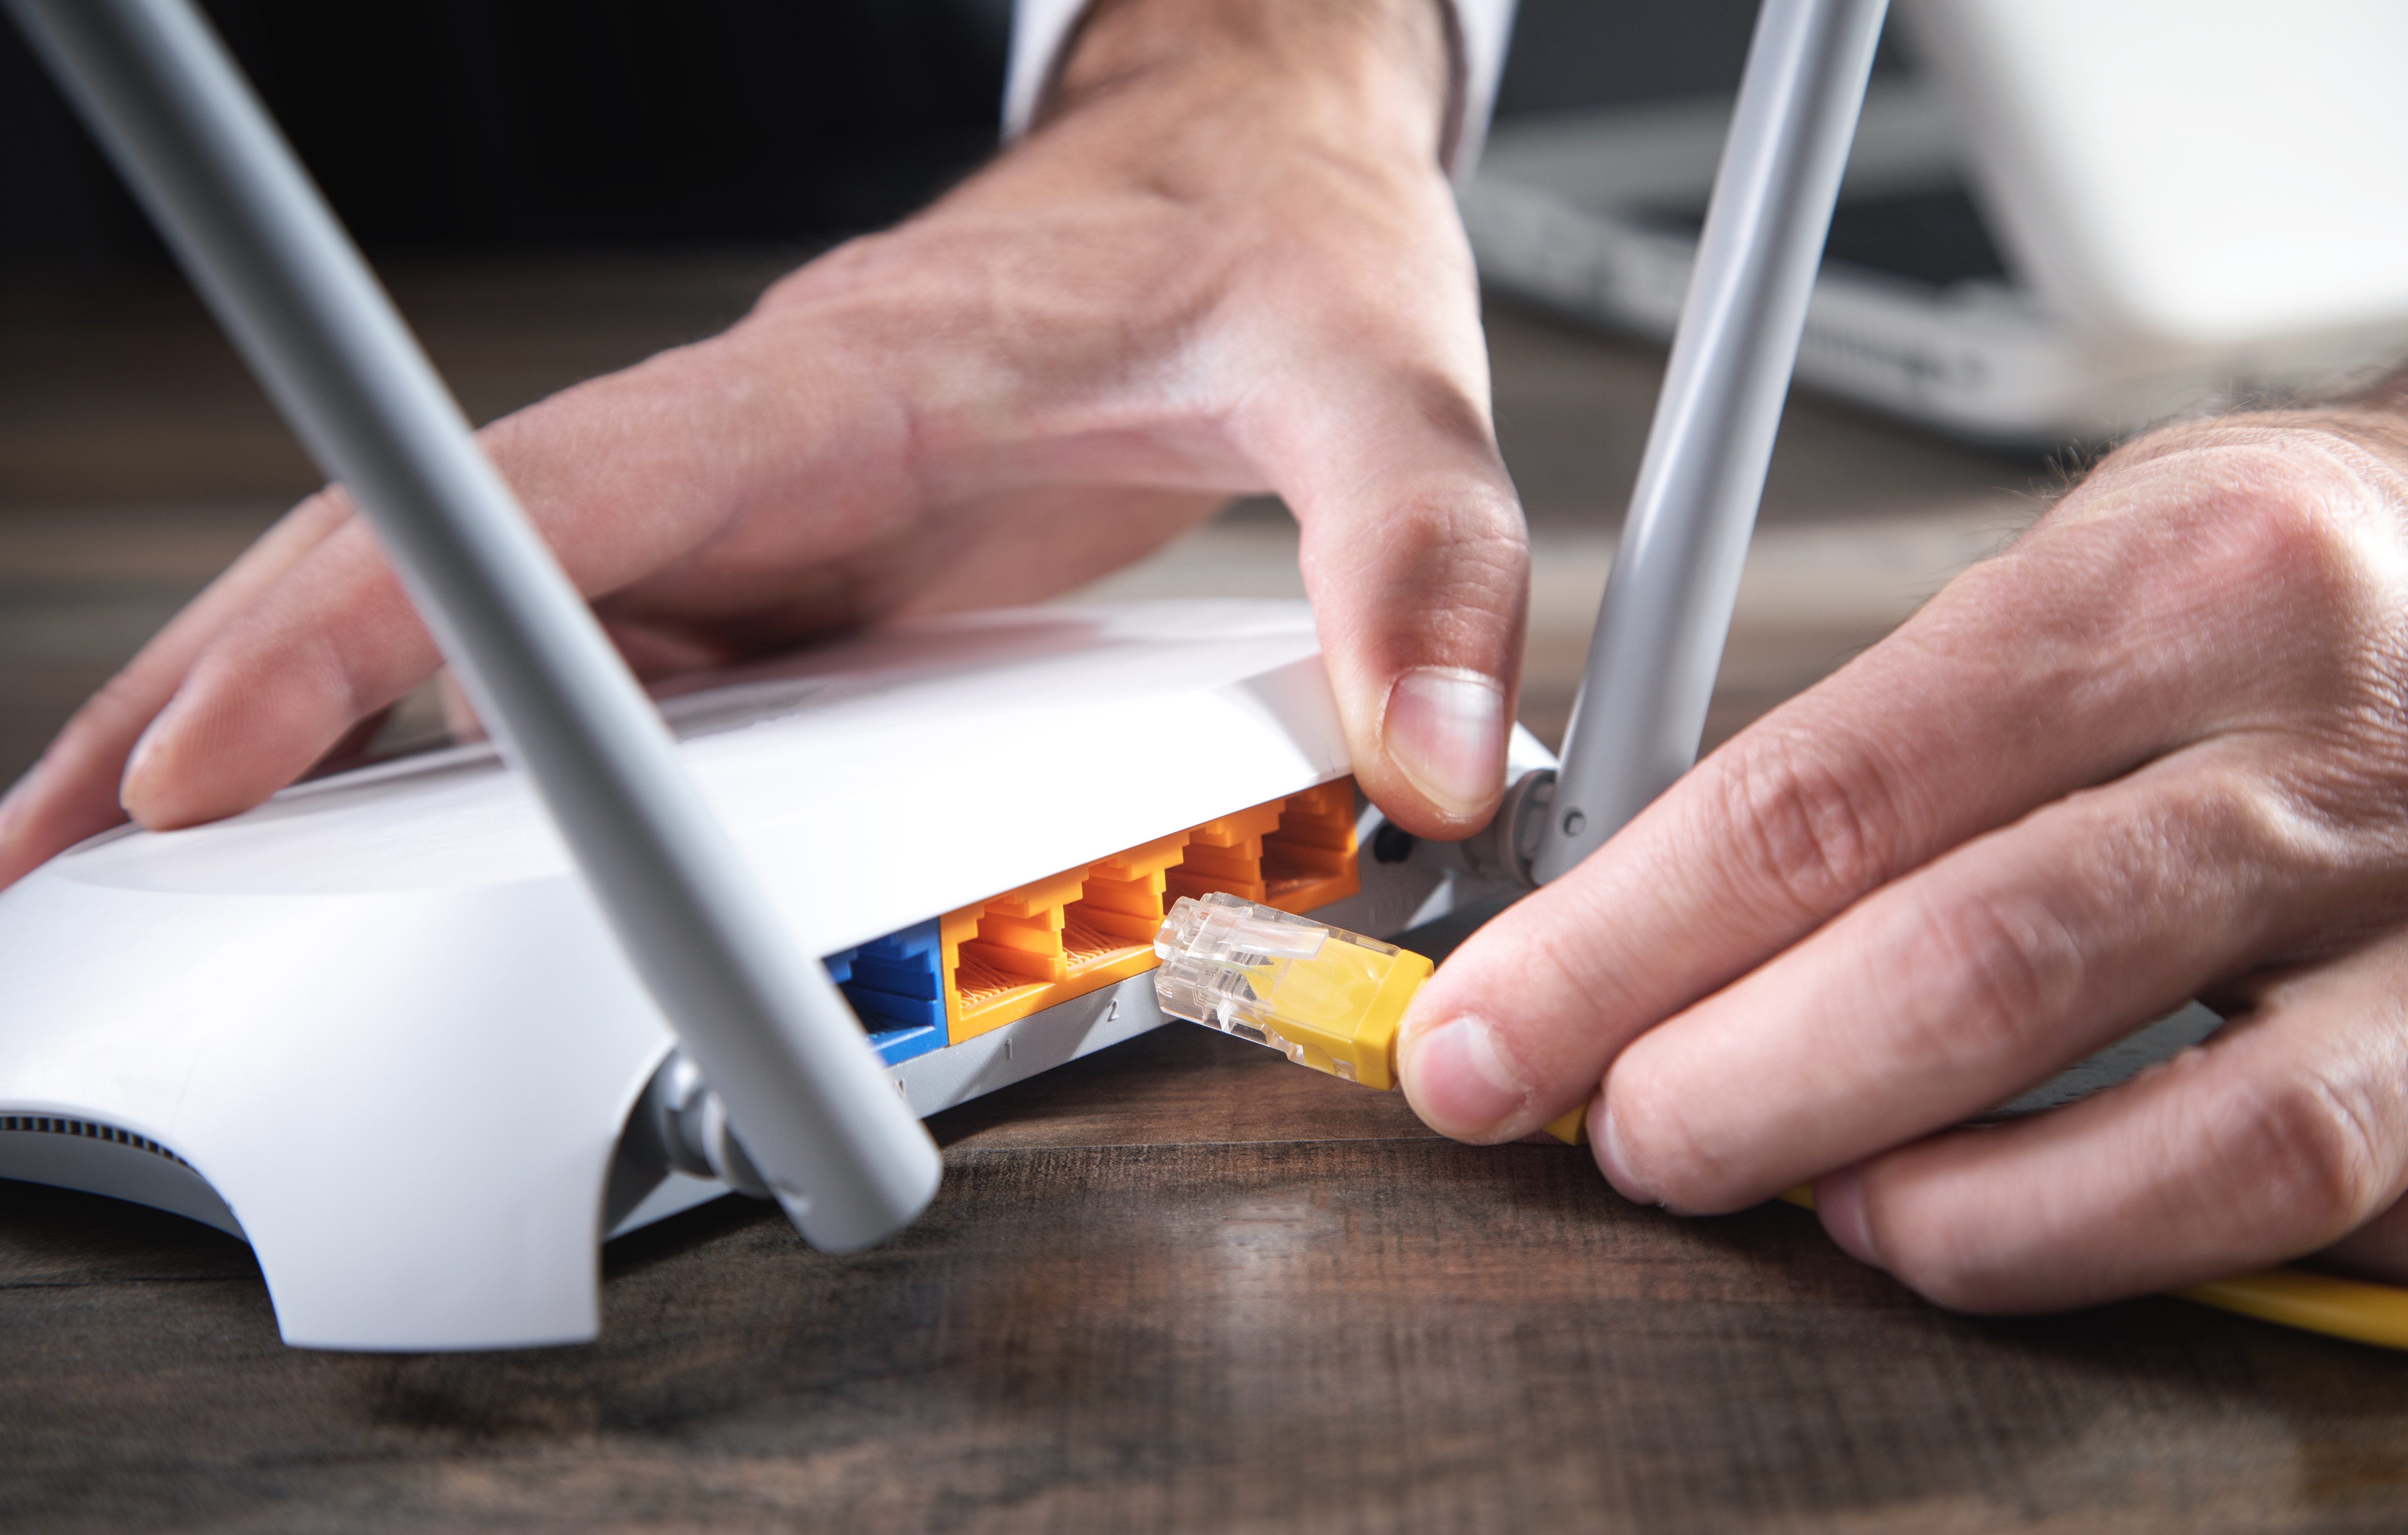 Un homme branchant un câble sur un routeur internet | Source : Shutterstock